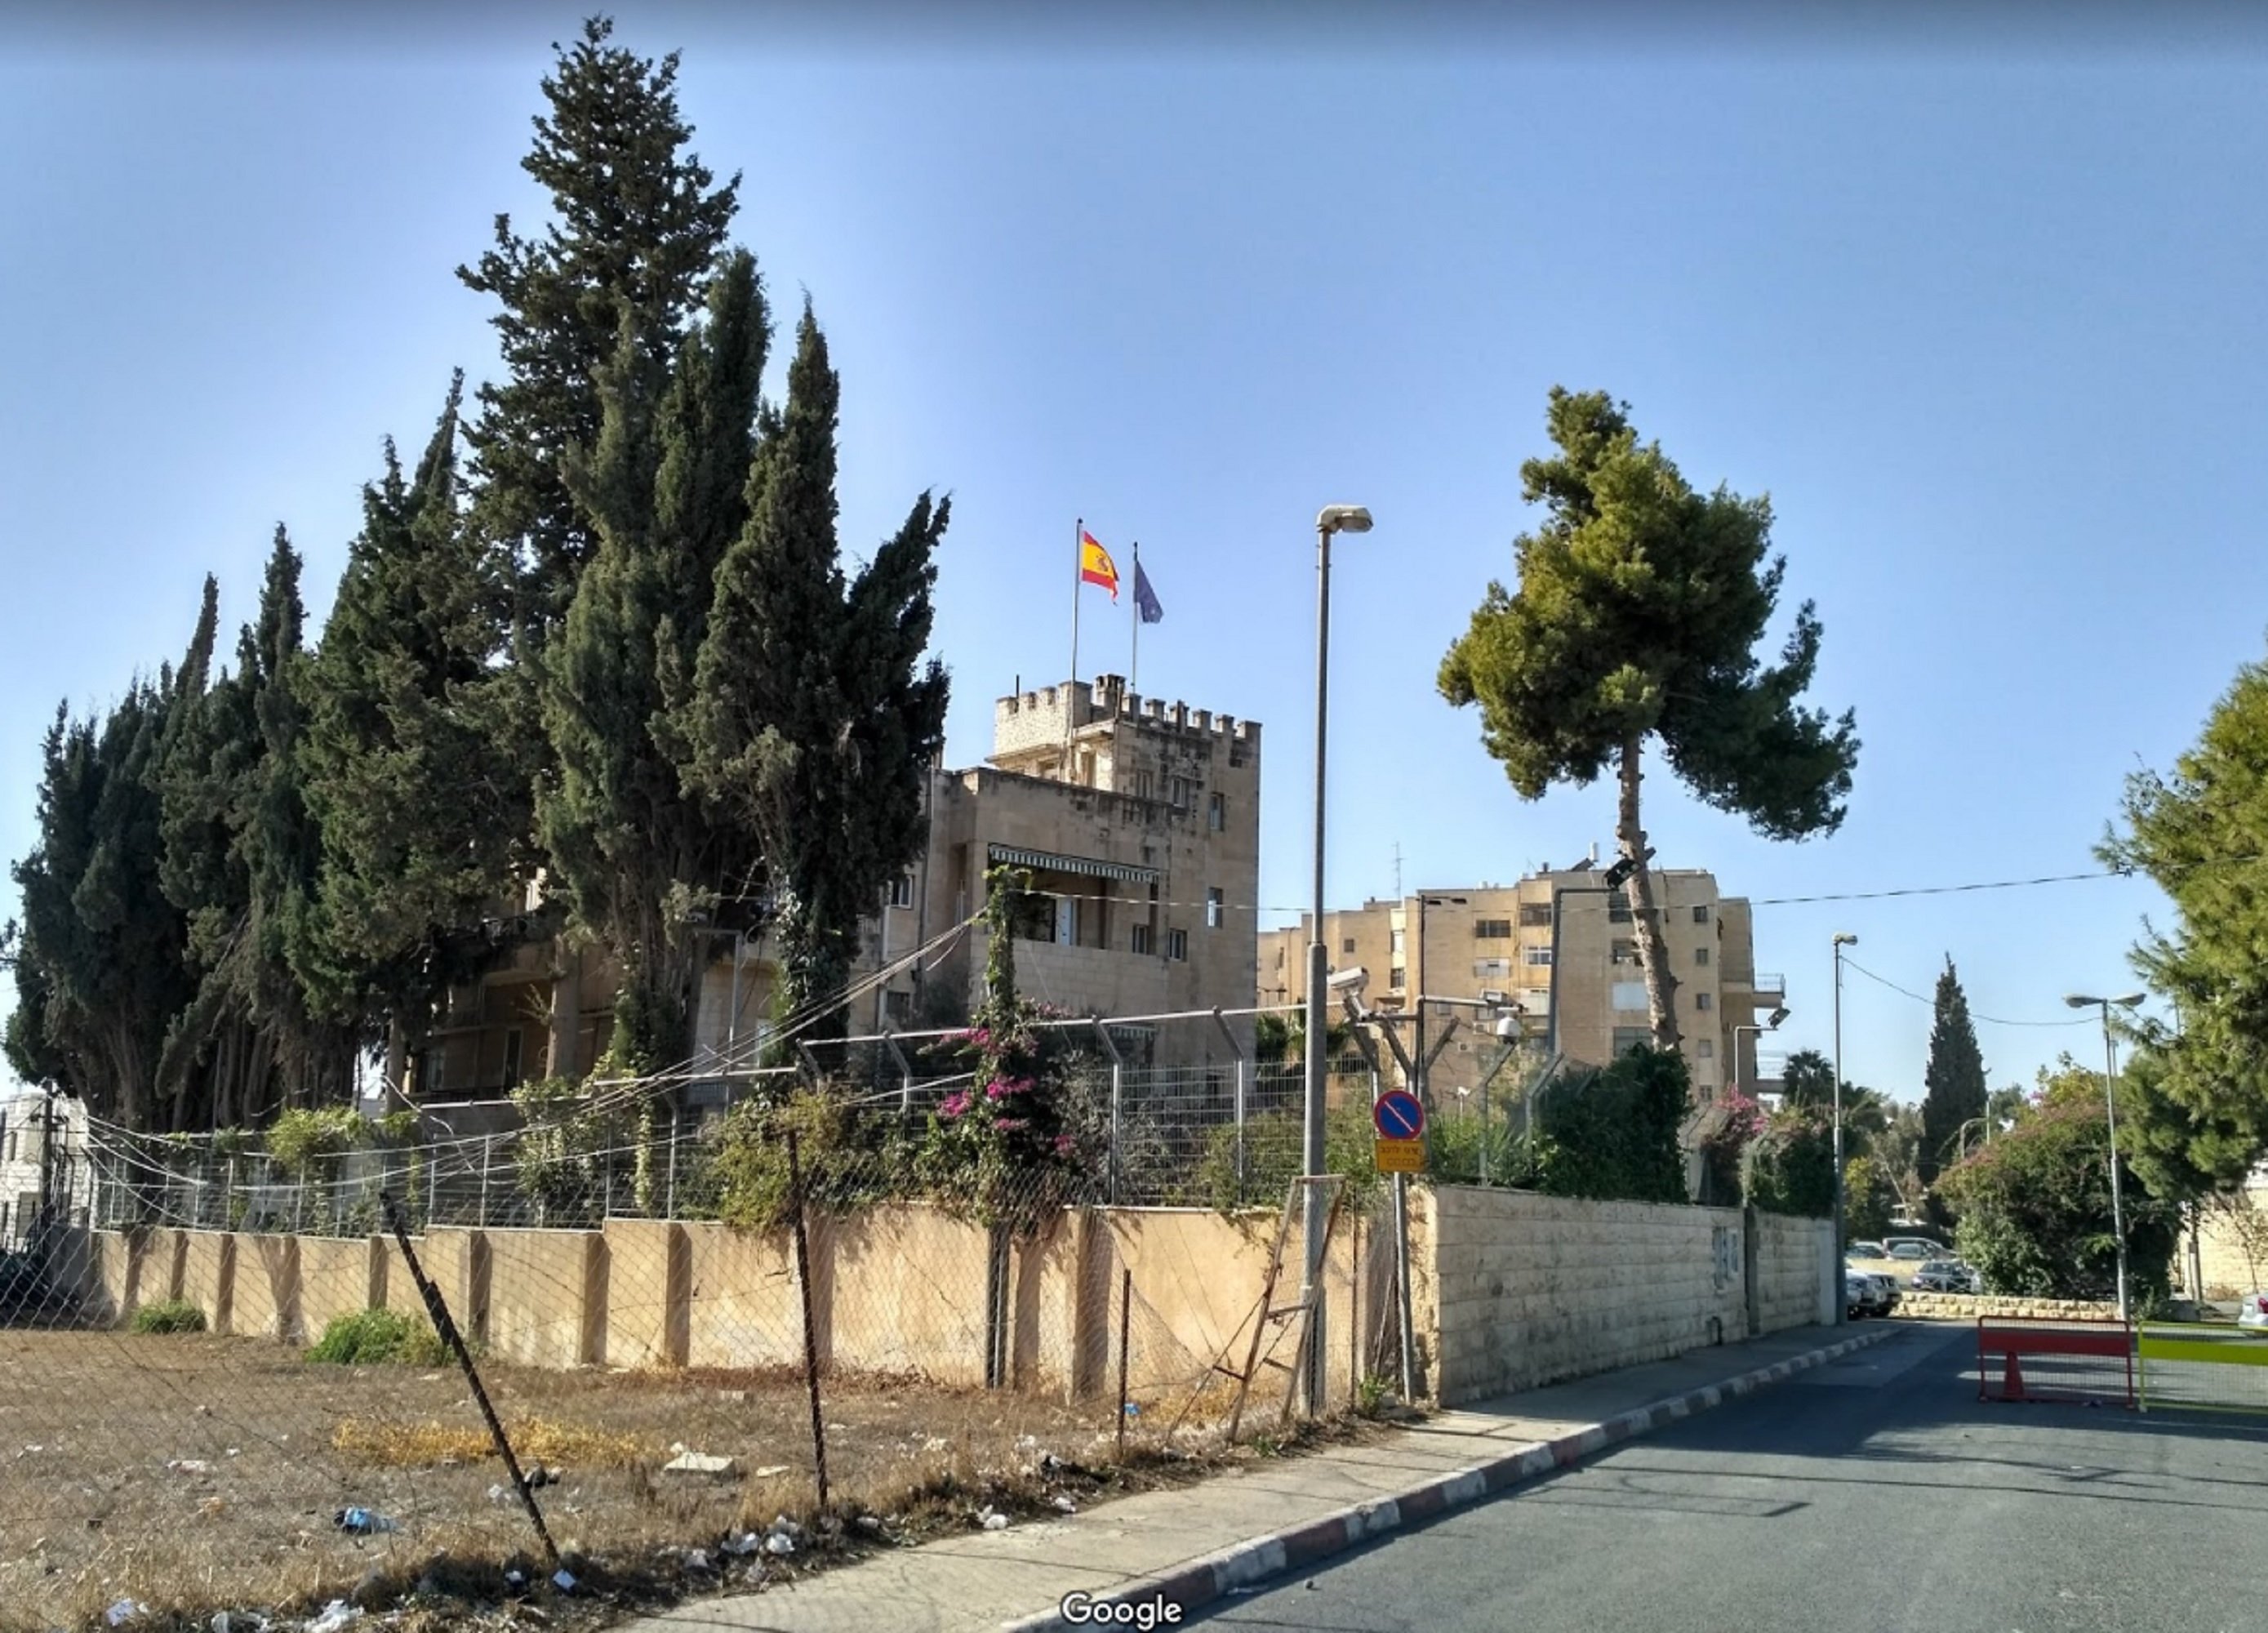 Nova patinada: Espanya indigna entitats israelianes en parlar d'"ocupació" de Jerusalem